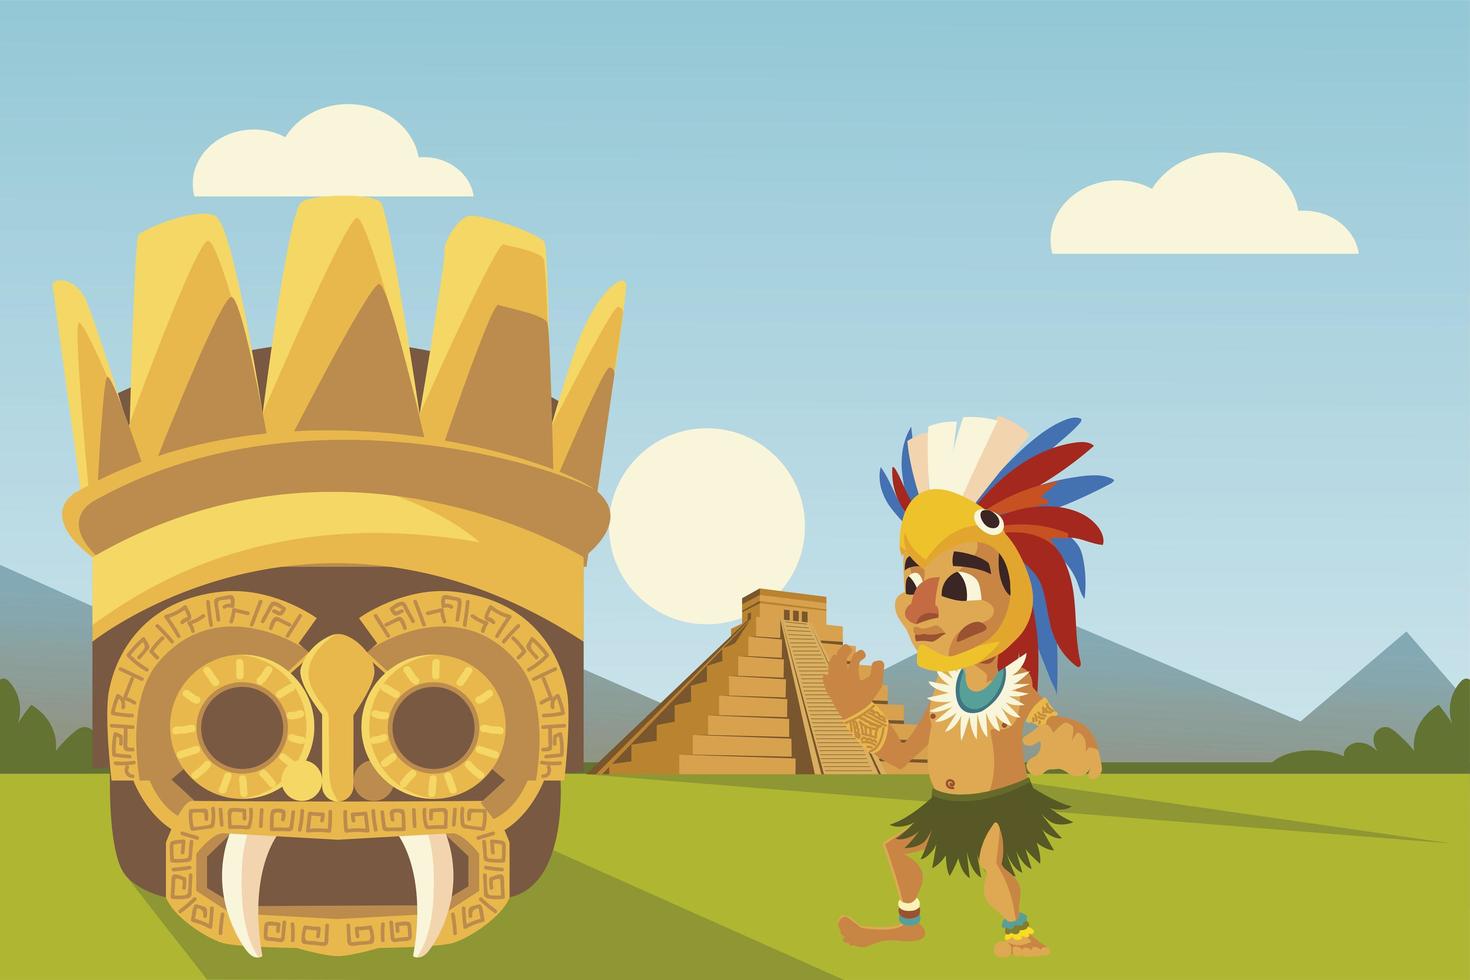 aztec kultur krigare mask och pyramid i landskap vektor